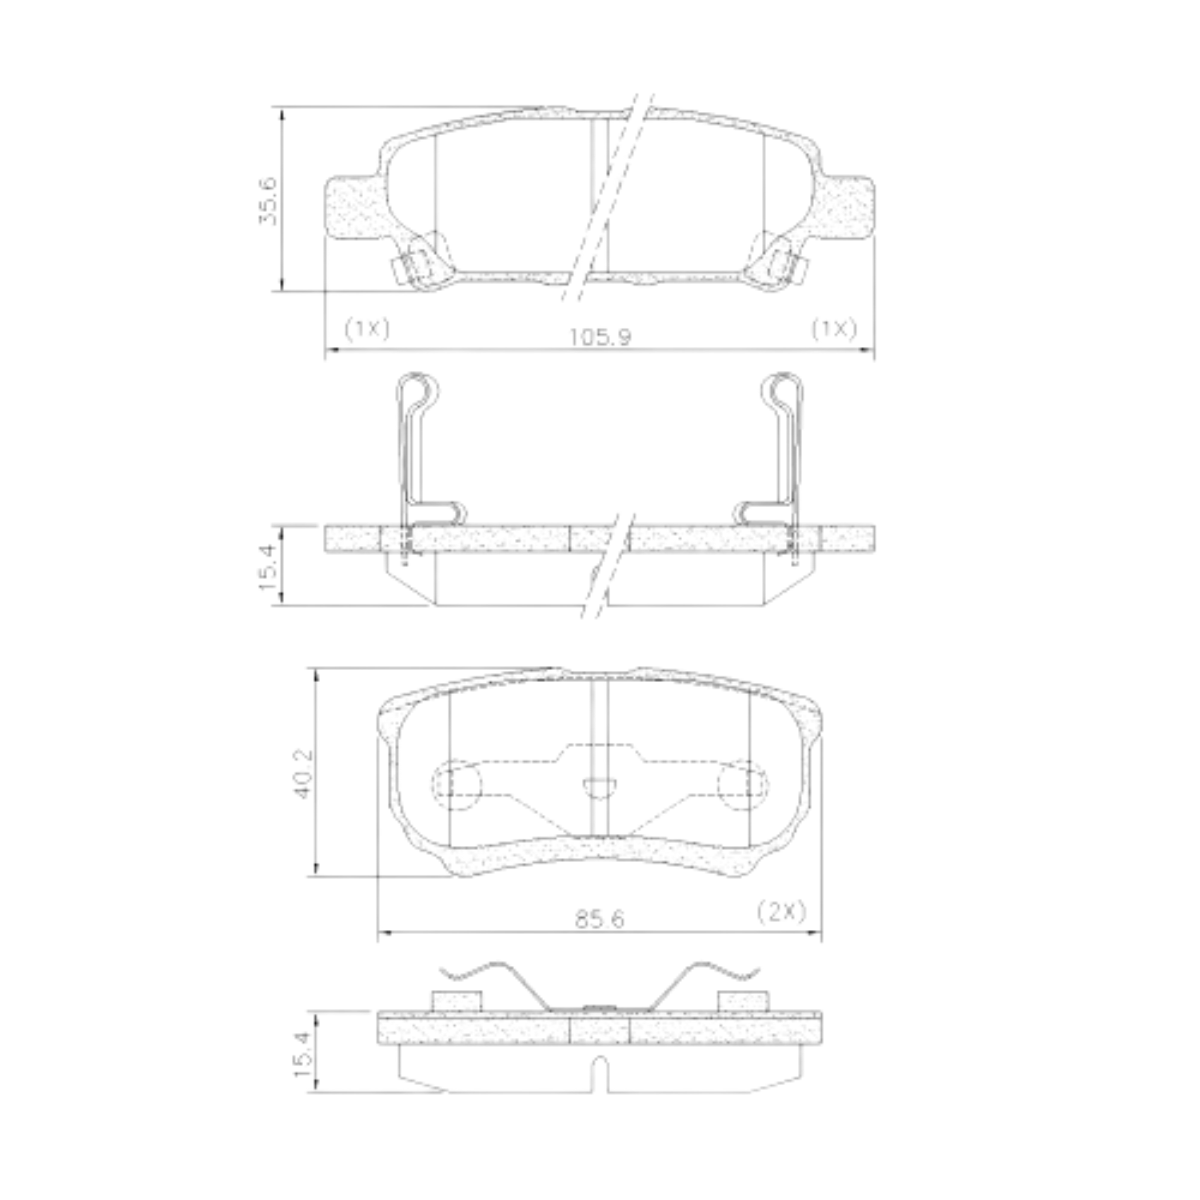 Pastilha Freio Mitsubishi Lancer 2.0 16v Hl By Armura 2016 Ate 2019 Traseira Sistema Akebono Fras-le Pd/723